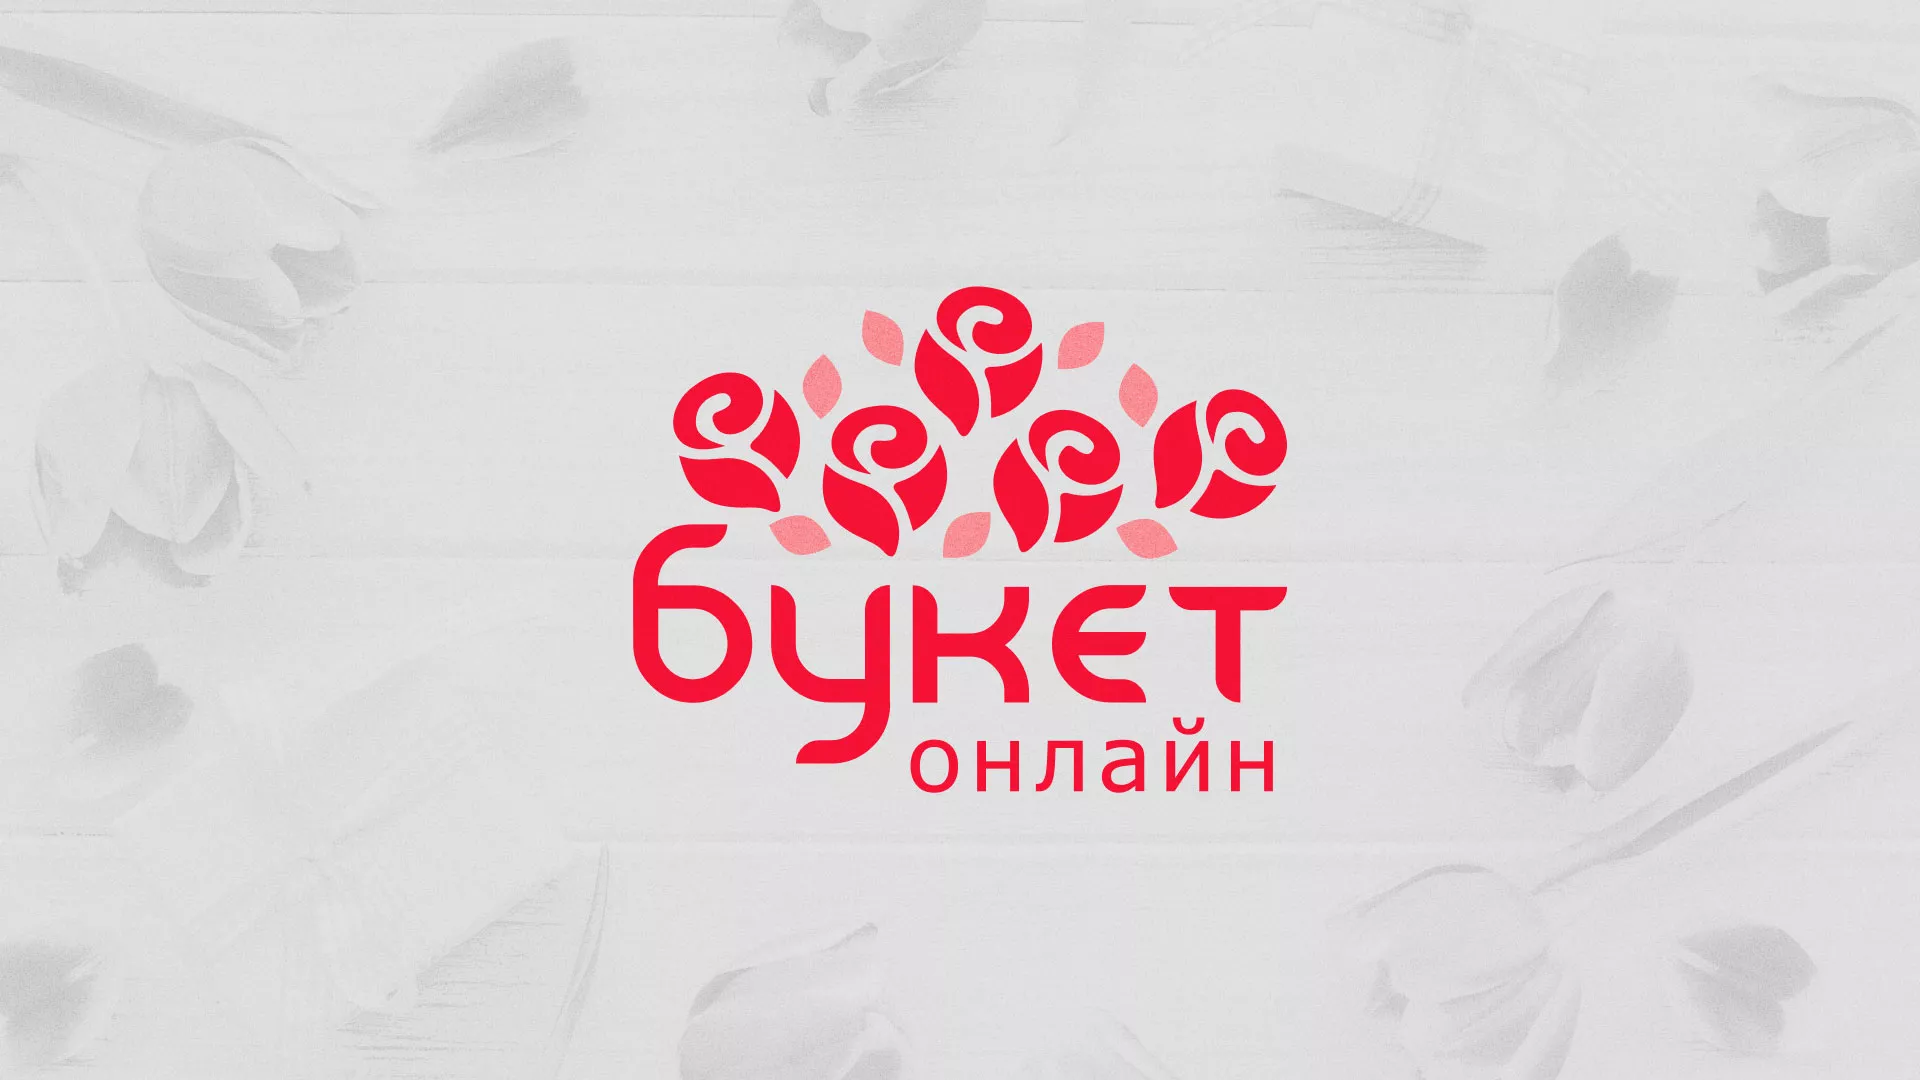 Создание интернет-магазина «Букет-онлайн» по цветам в Никольске